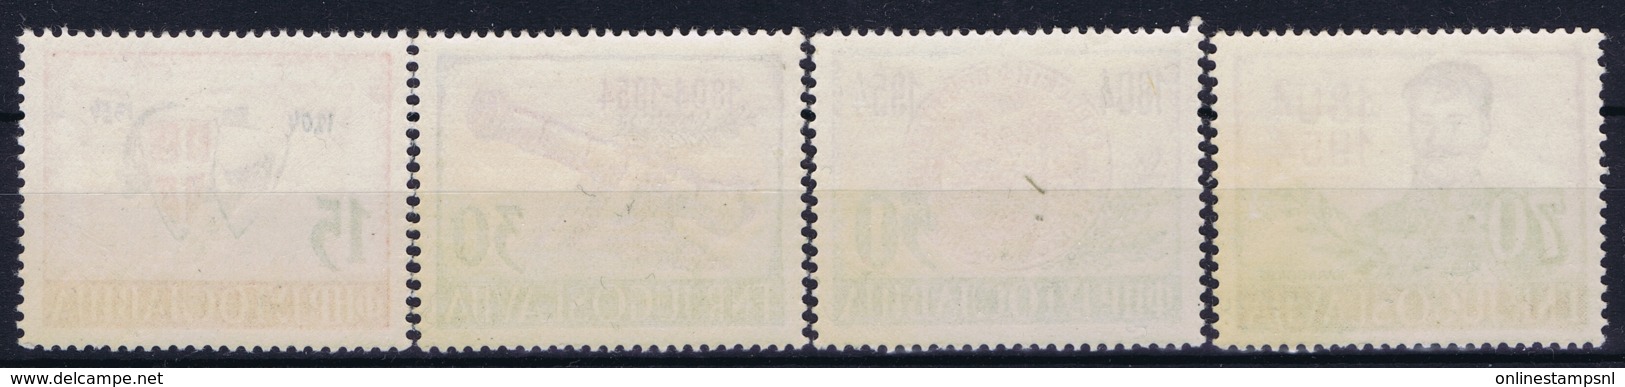 Jugoslawien Mi 751 - 754 Postfrisch/neuf Sans Charniere /MNH/**  1954 - Nuevos